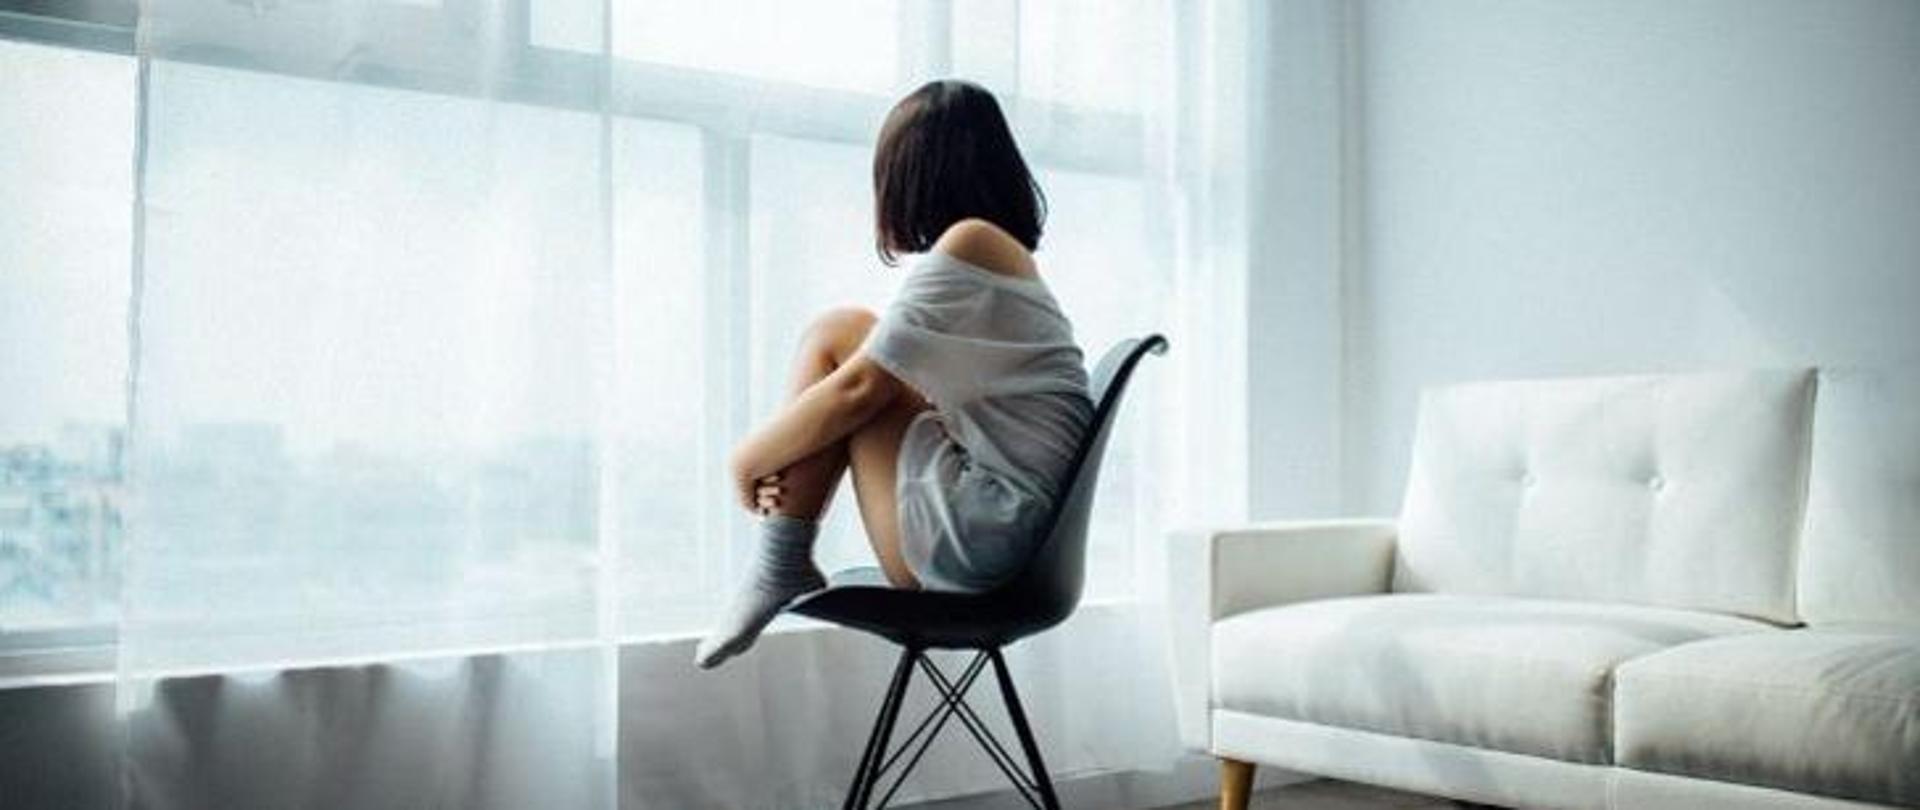 Dziewczyna w czarnych włosach siedząca na krześle z przykurczonymi nogami i zapatrzona w okno